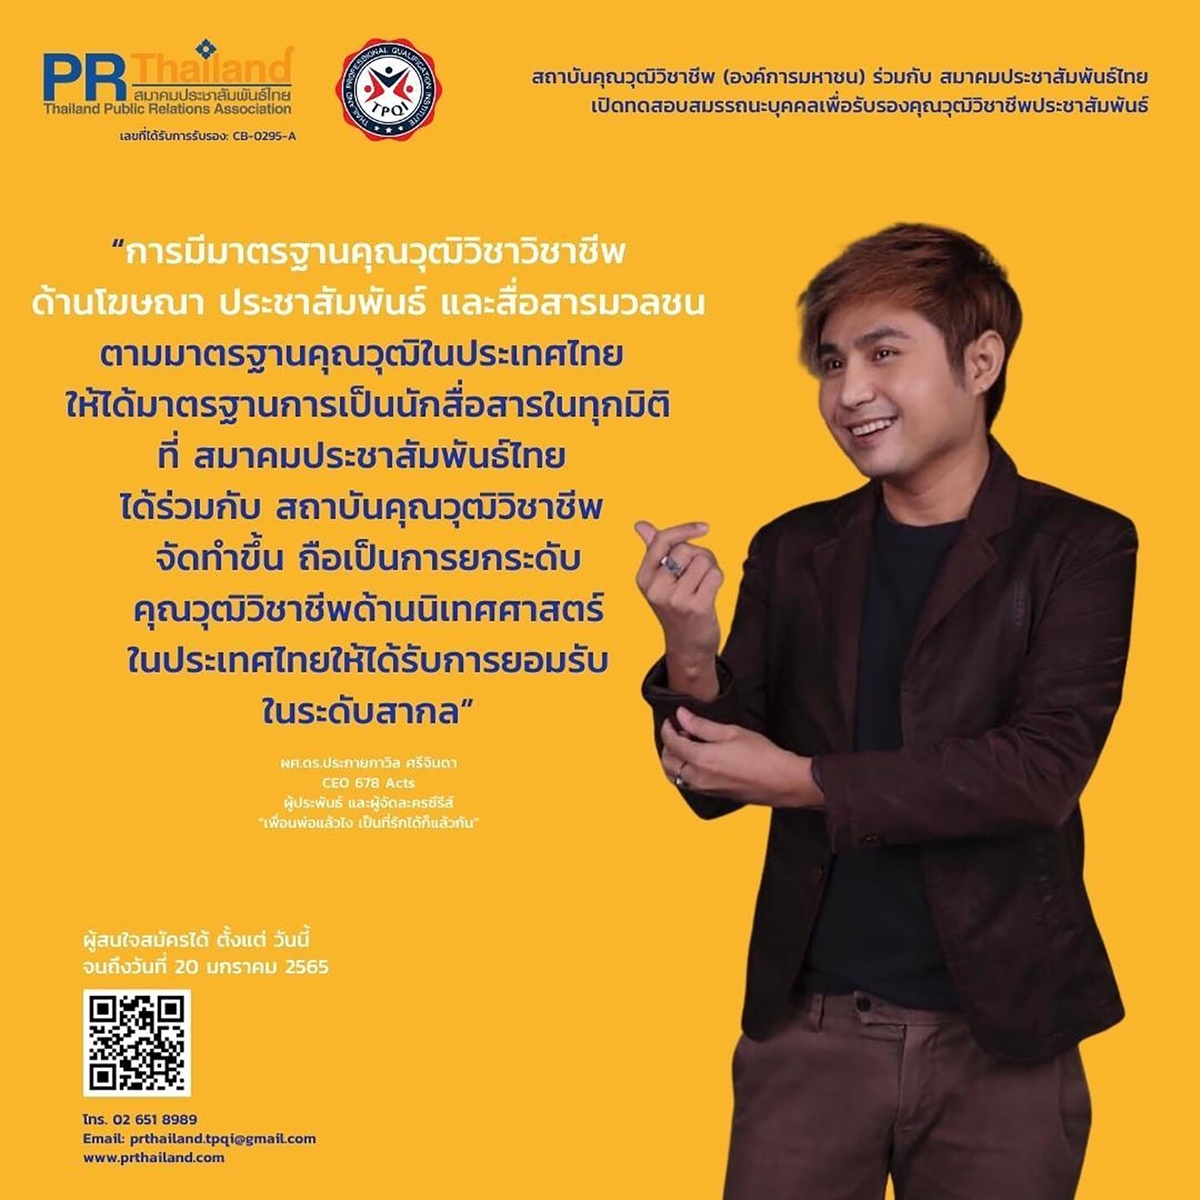 สมาคมประชาสัมพันธ์ไทยเผย PR นักสื่อสารรุ่นใหม่ ให้การตอบรับดีมาก สนใจสมัครเข้ารับการประเมินเพื่อรับรองมาตรฐานคุณวุฒิวิชาชีพประชาสัมพันธ์ รุ่น 1/2565 เปิดถึง 20